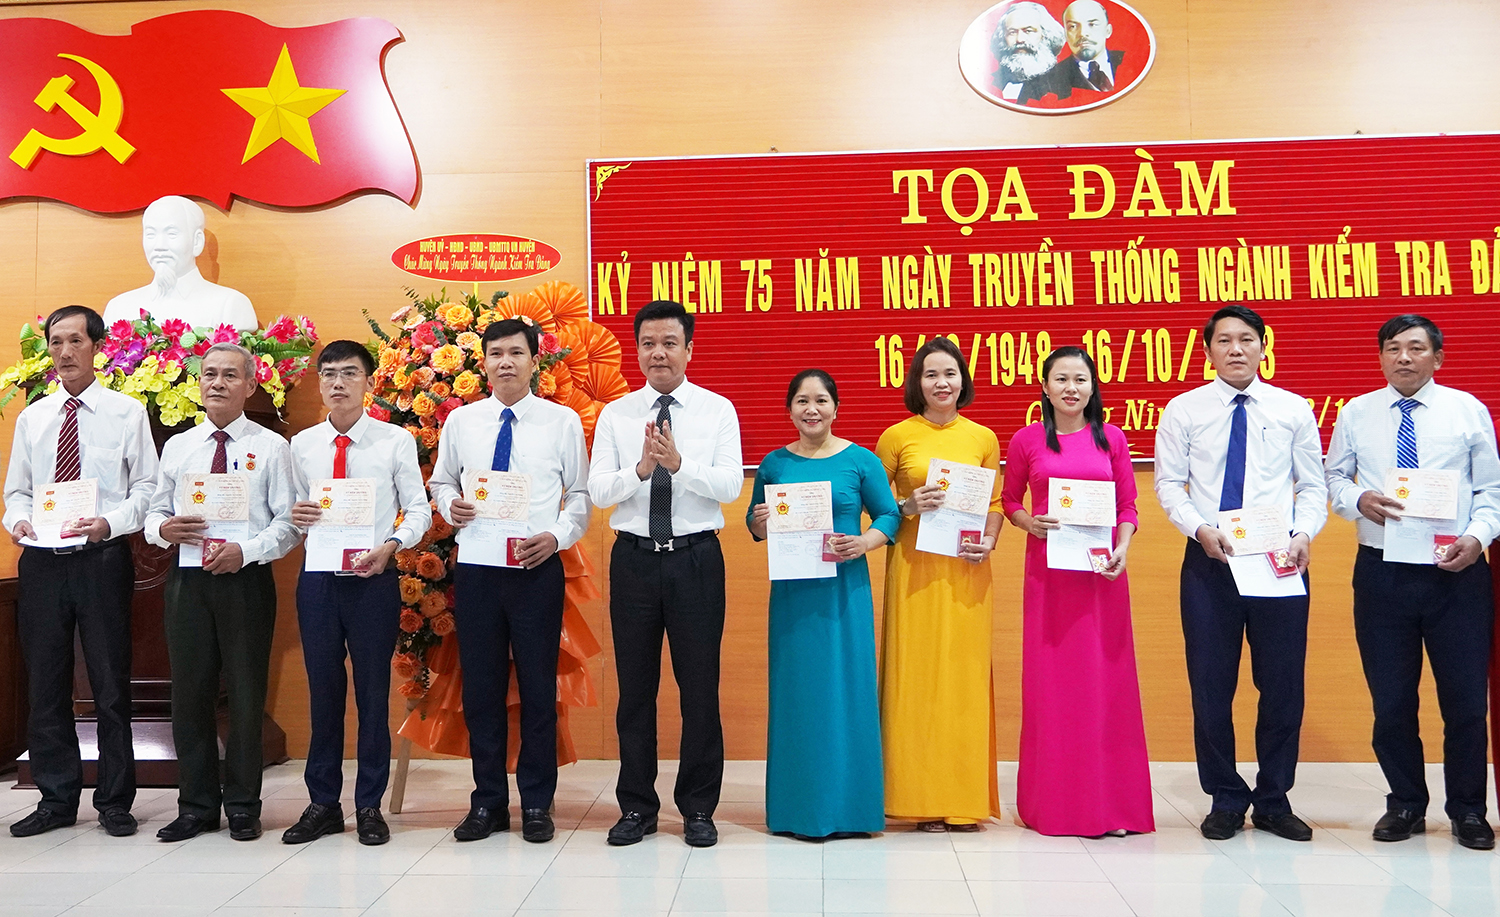 Quảng Ninh: Tọa đàm kỷ niệm 75 năm Ngày truyền thống ngành Kiểm tra Đảng